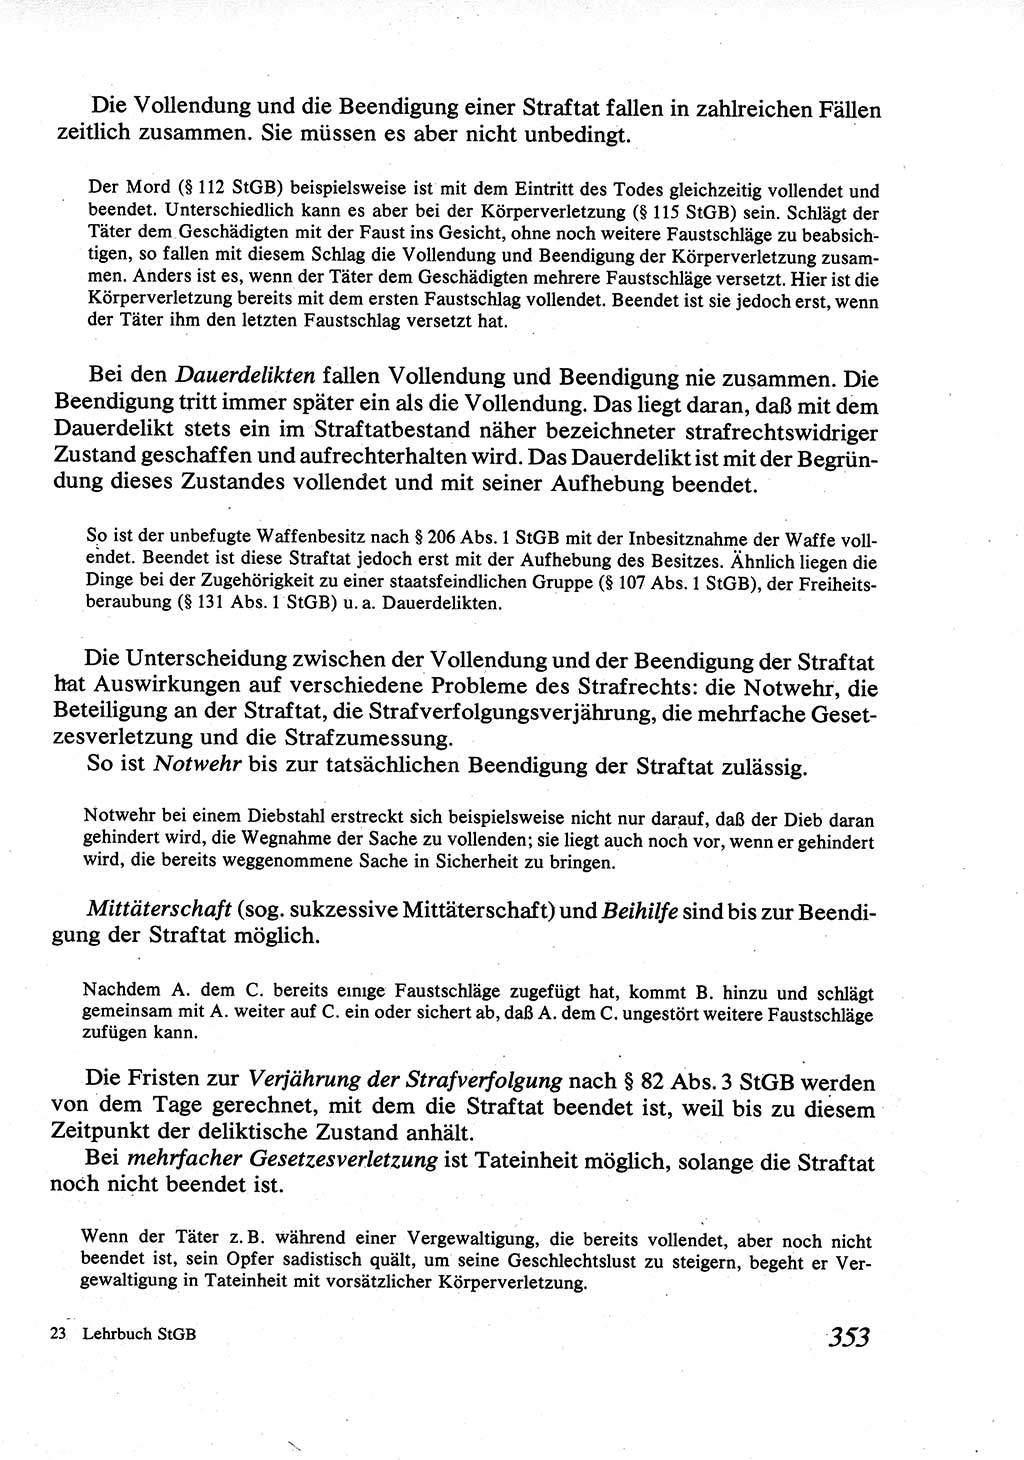 Strafrecht [Deutsche Demokratische Republik (DDR)], Allgemeiner Teil, Lehrbuch 1976, Seite 353 (Strafr. DDR AT Lb. 1976, S. 353)